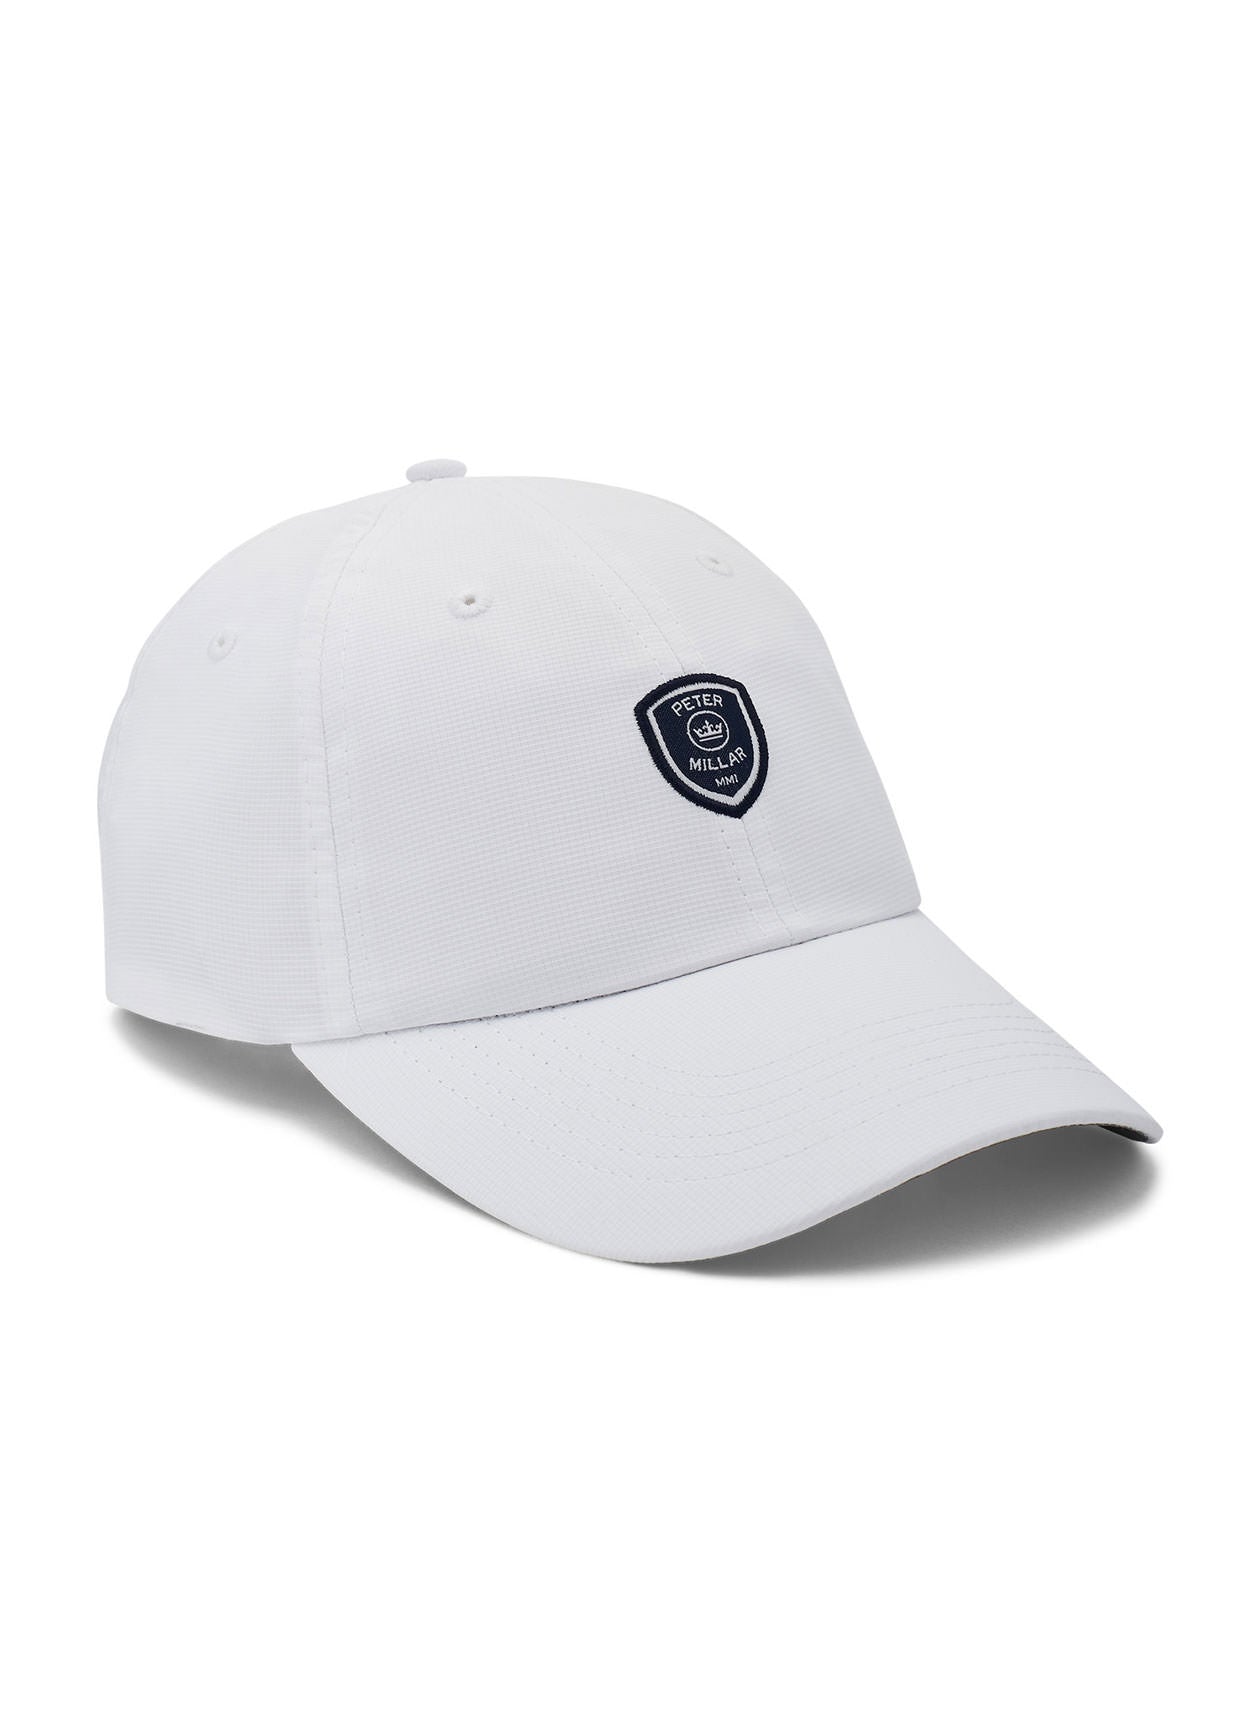 Peter Millar White Crown Crest Performance Hat |  Peter Millar 白色皇冠徽章性能帽子